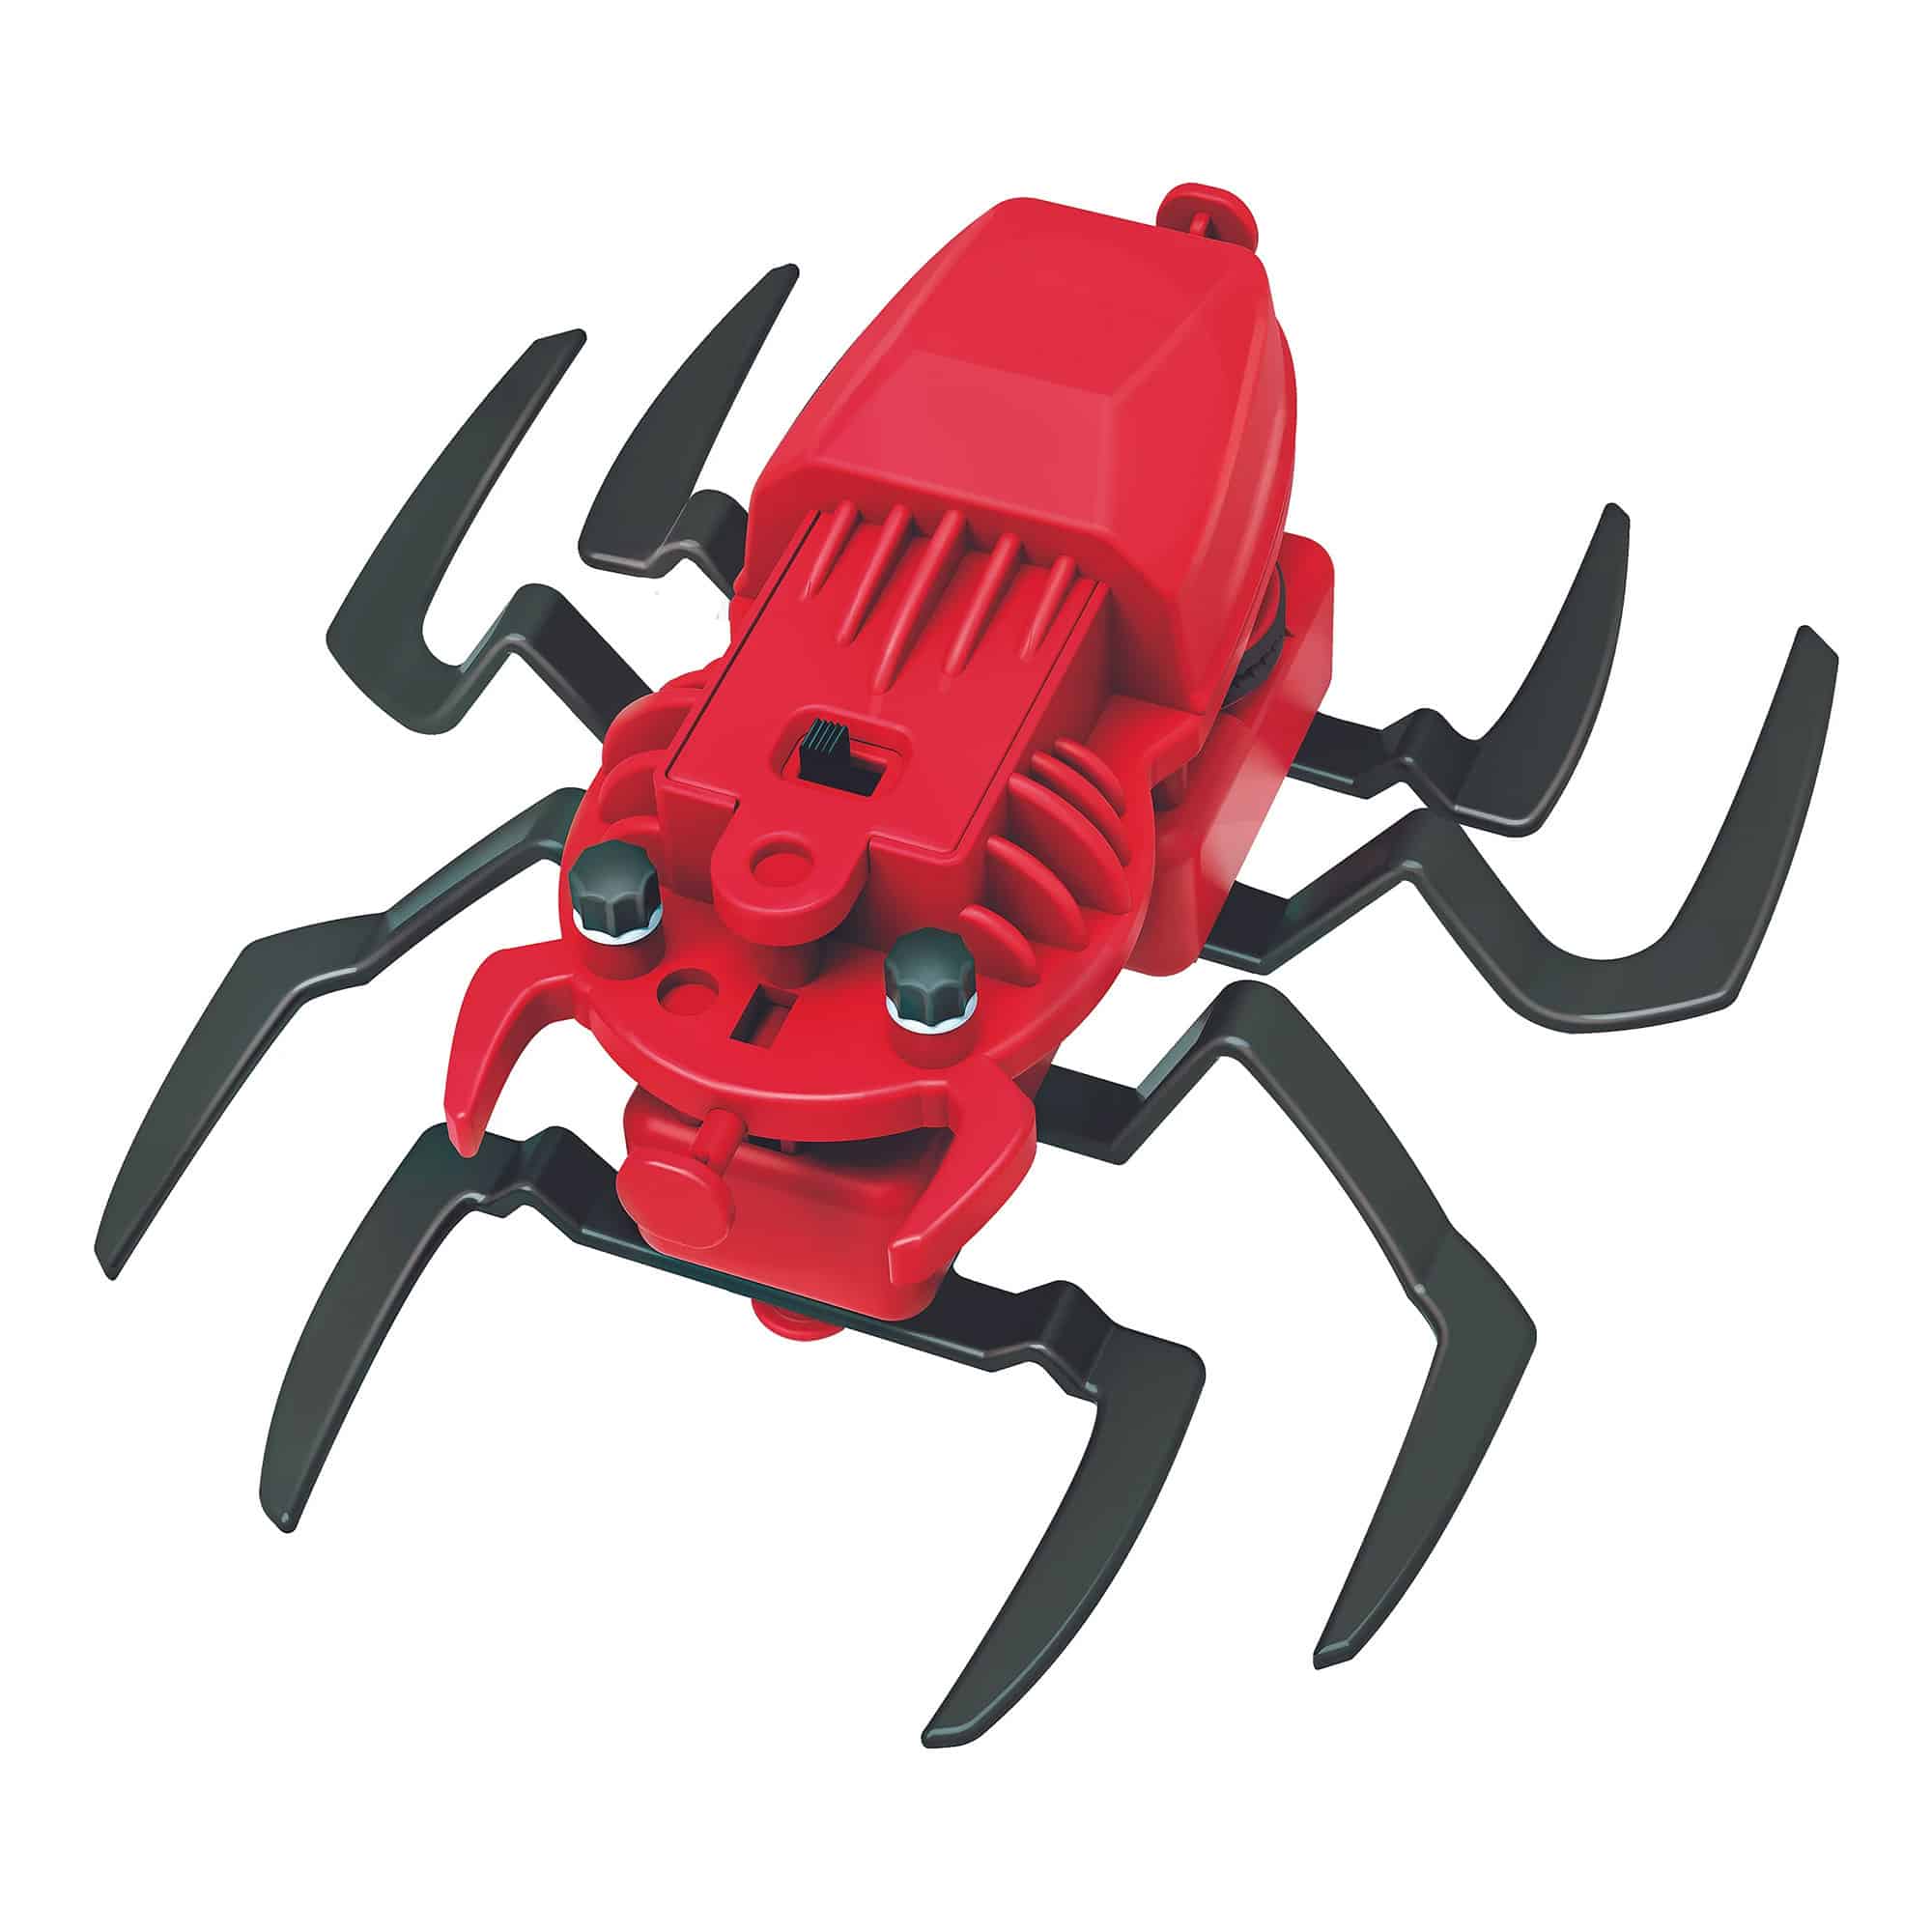 4M - Kidz Robotix - Spider Robot